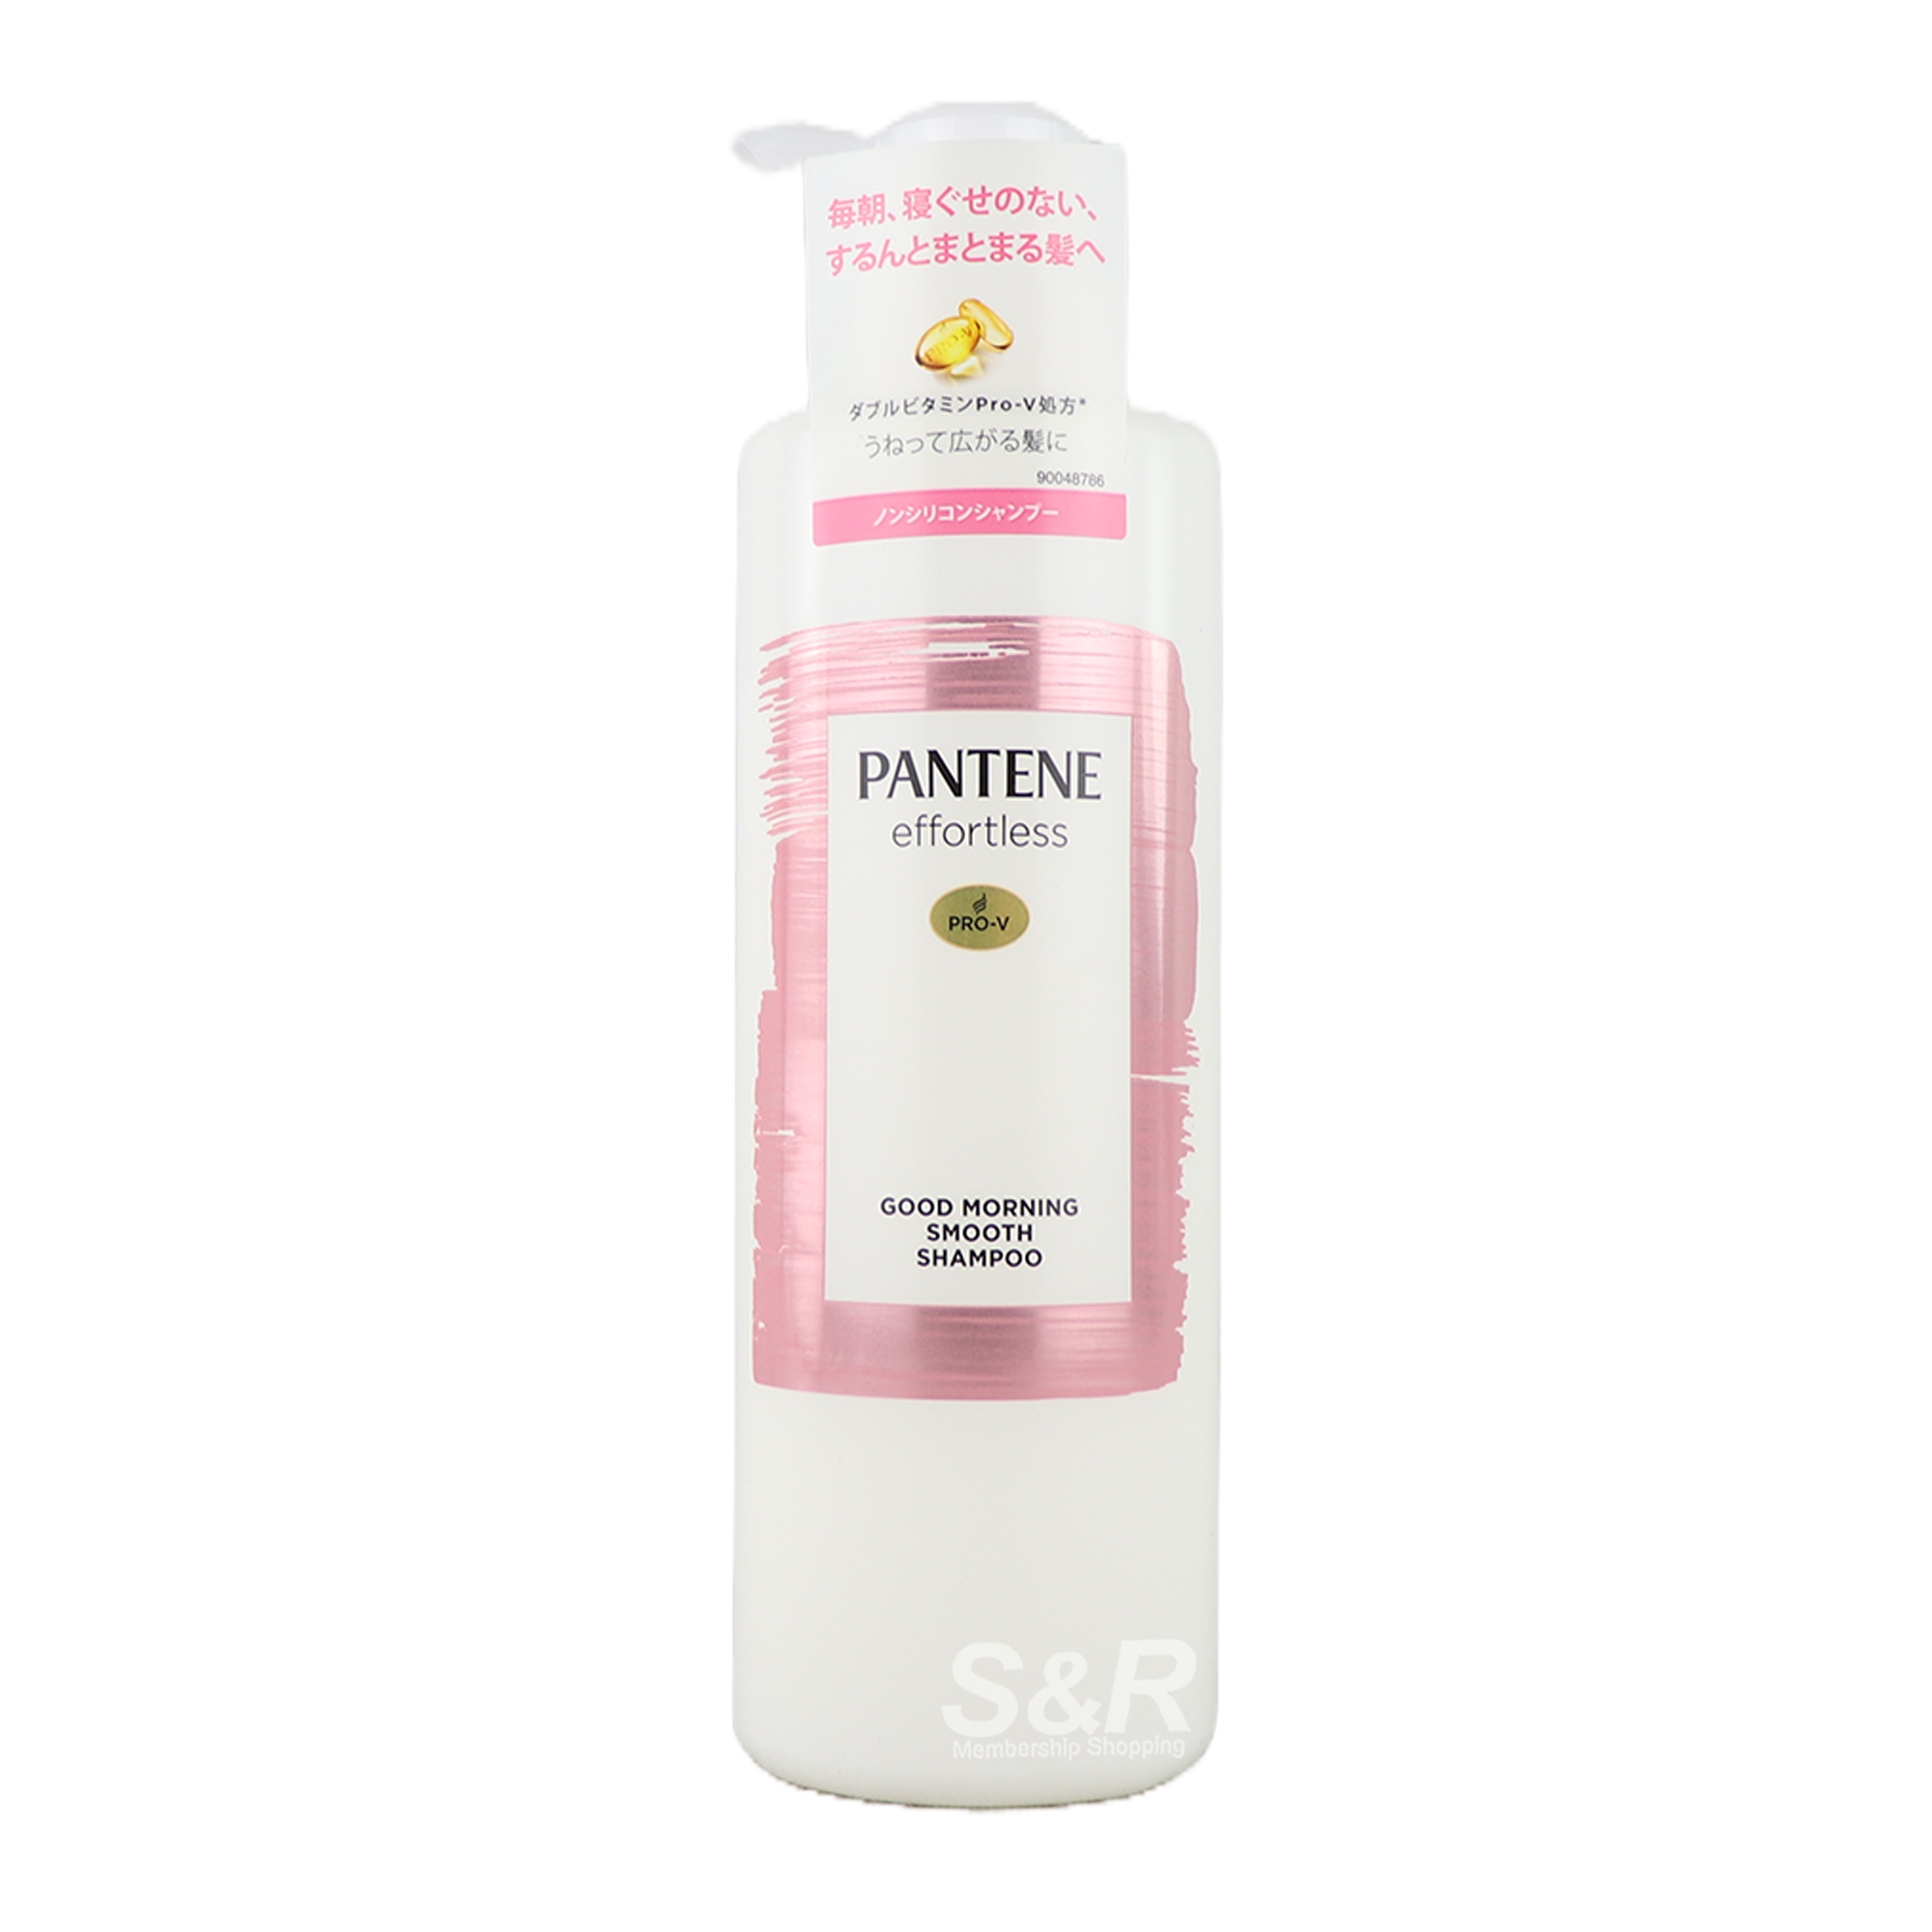 Pantene Effortless Good Morning Smooth Shampoo 480mL